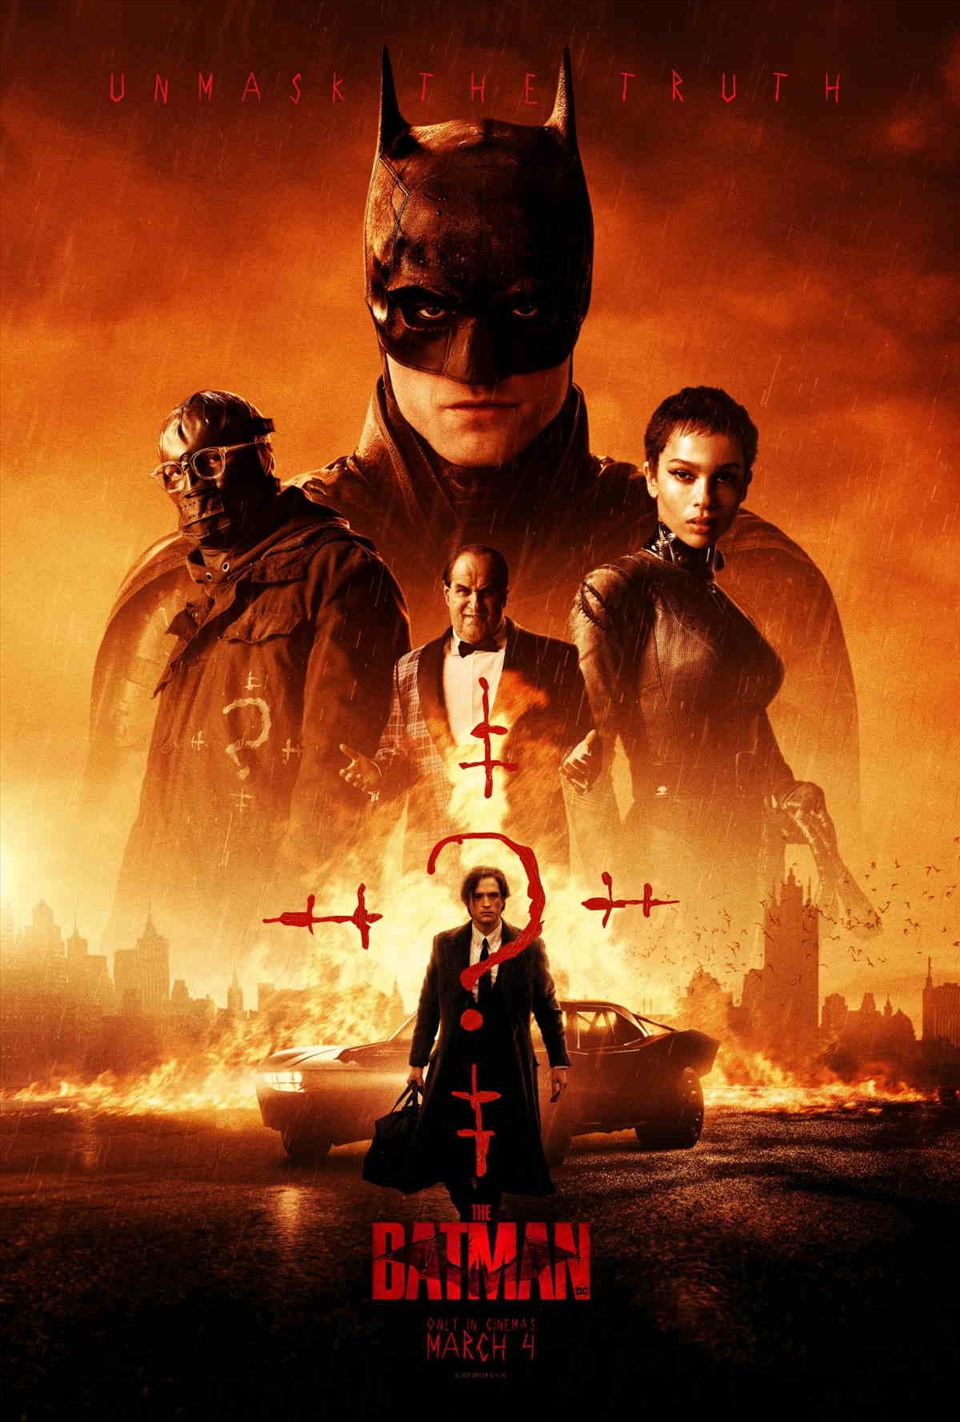 “Batman” hiện là tác phẩm bom tấn khuấy đảo mọi rạp phim trên thế giới. Ảnh: Xinhua